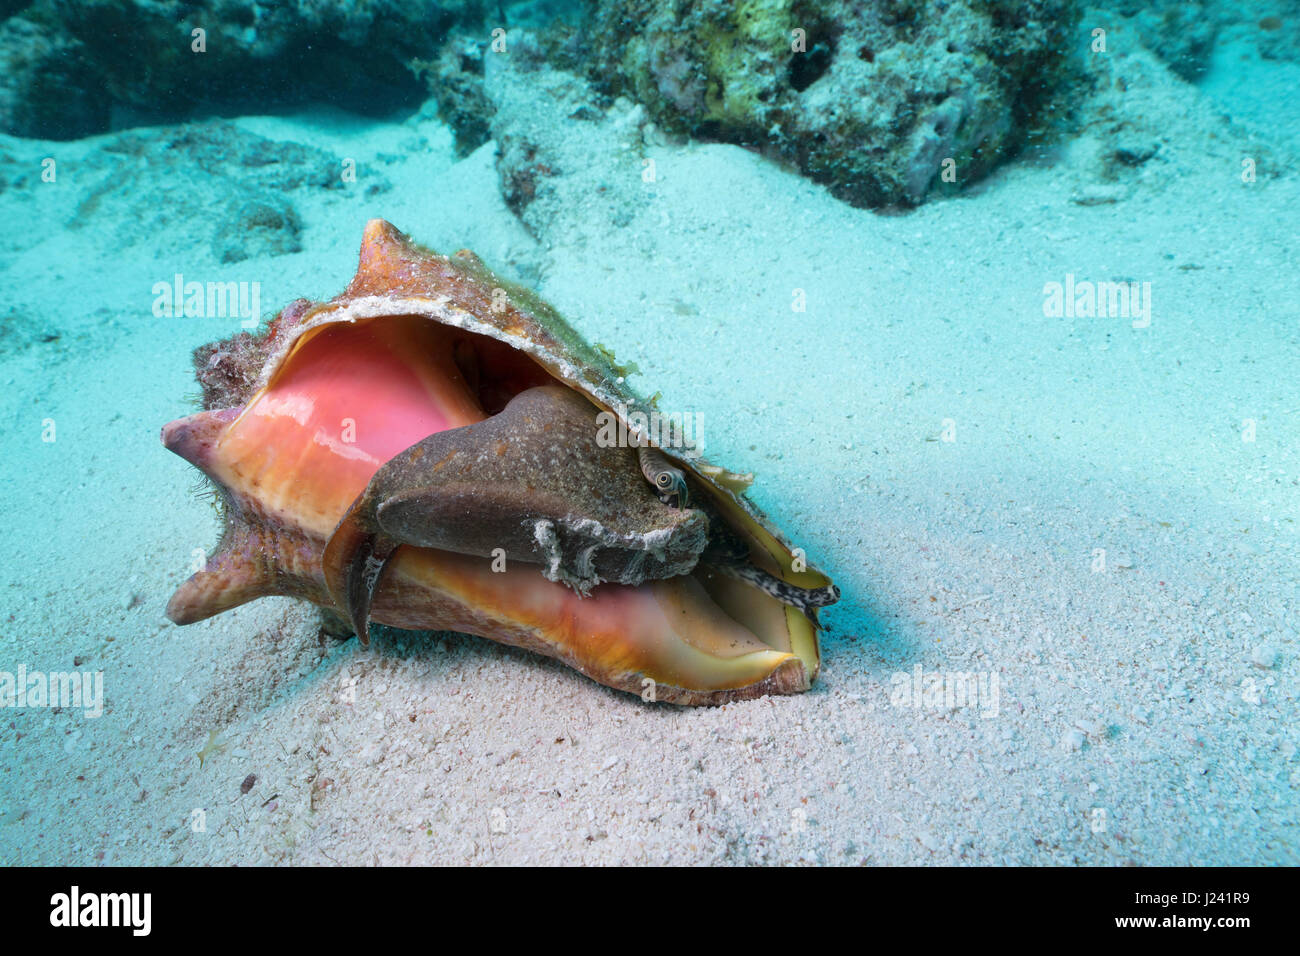 Mollusk exposés dans leur carapace. Banque D'Images